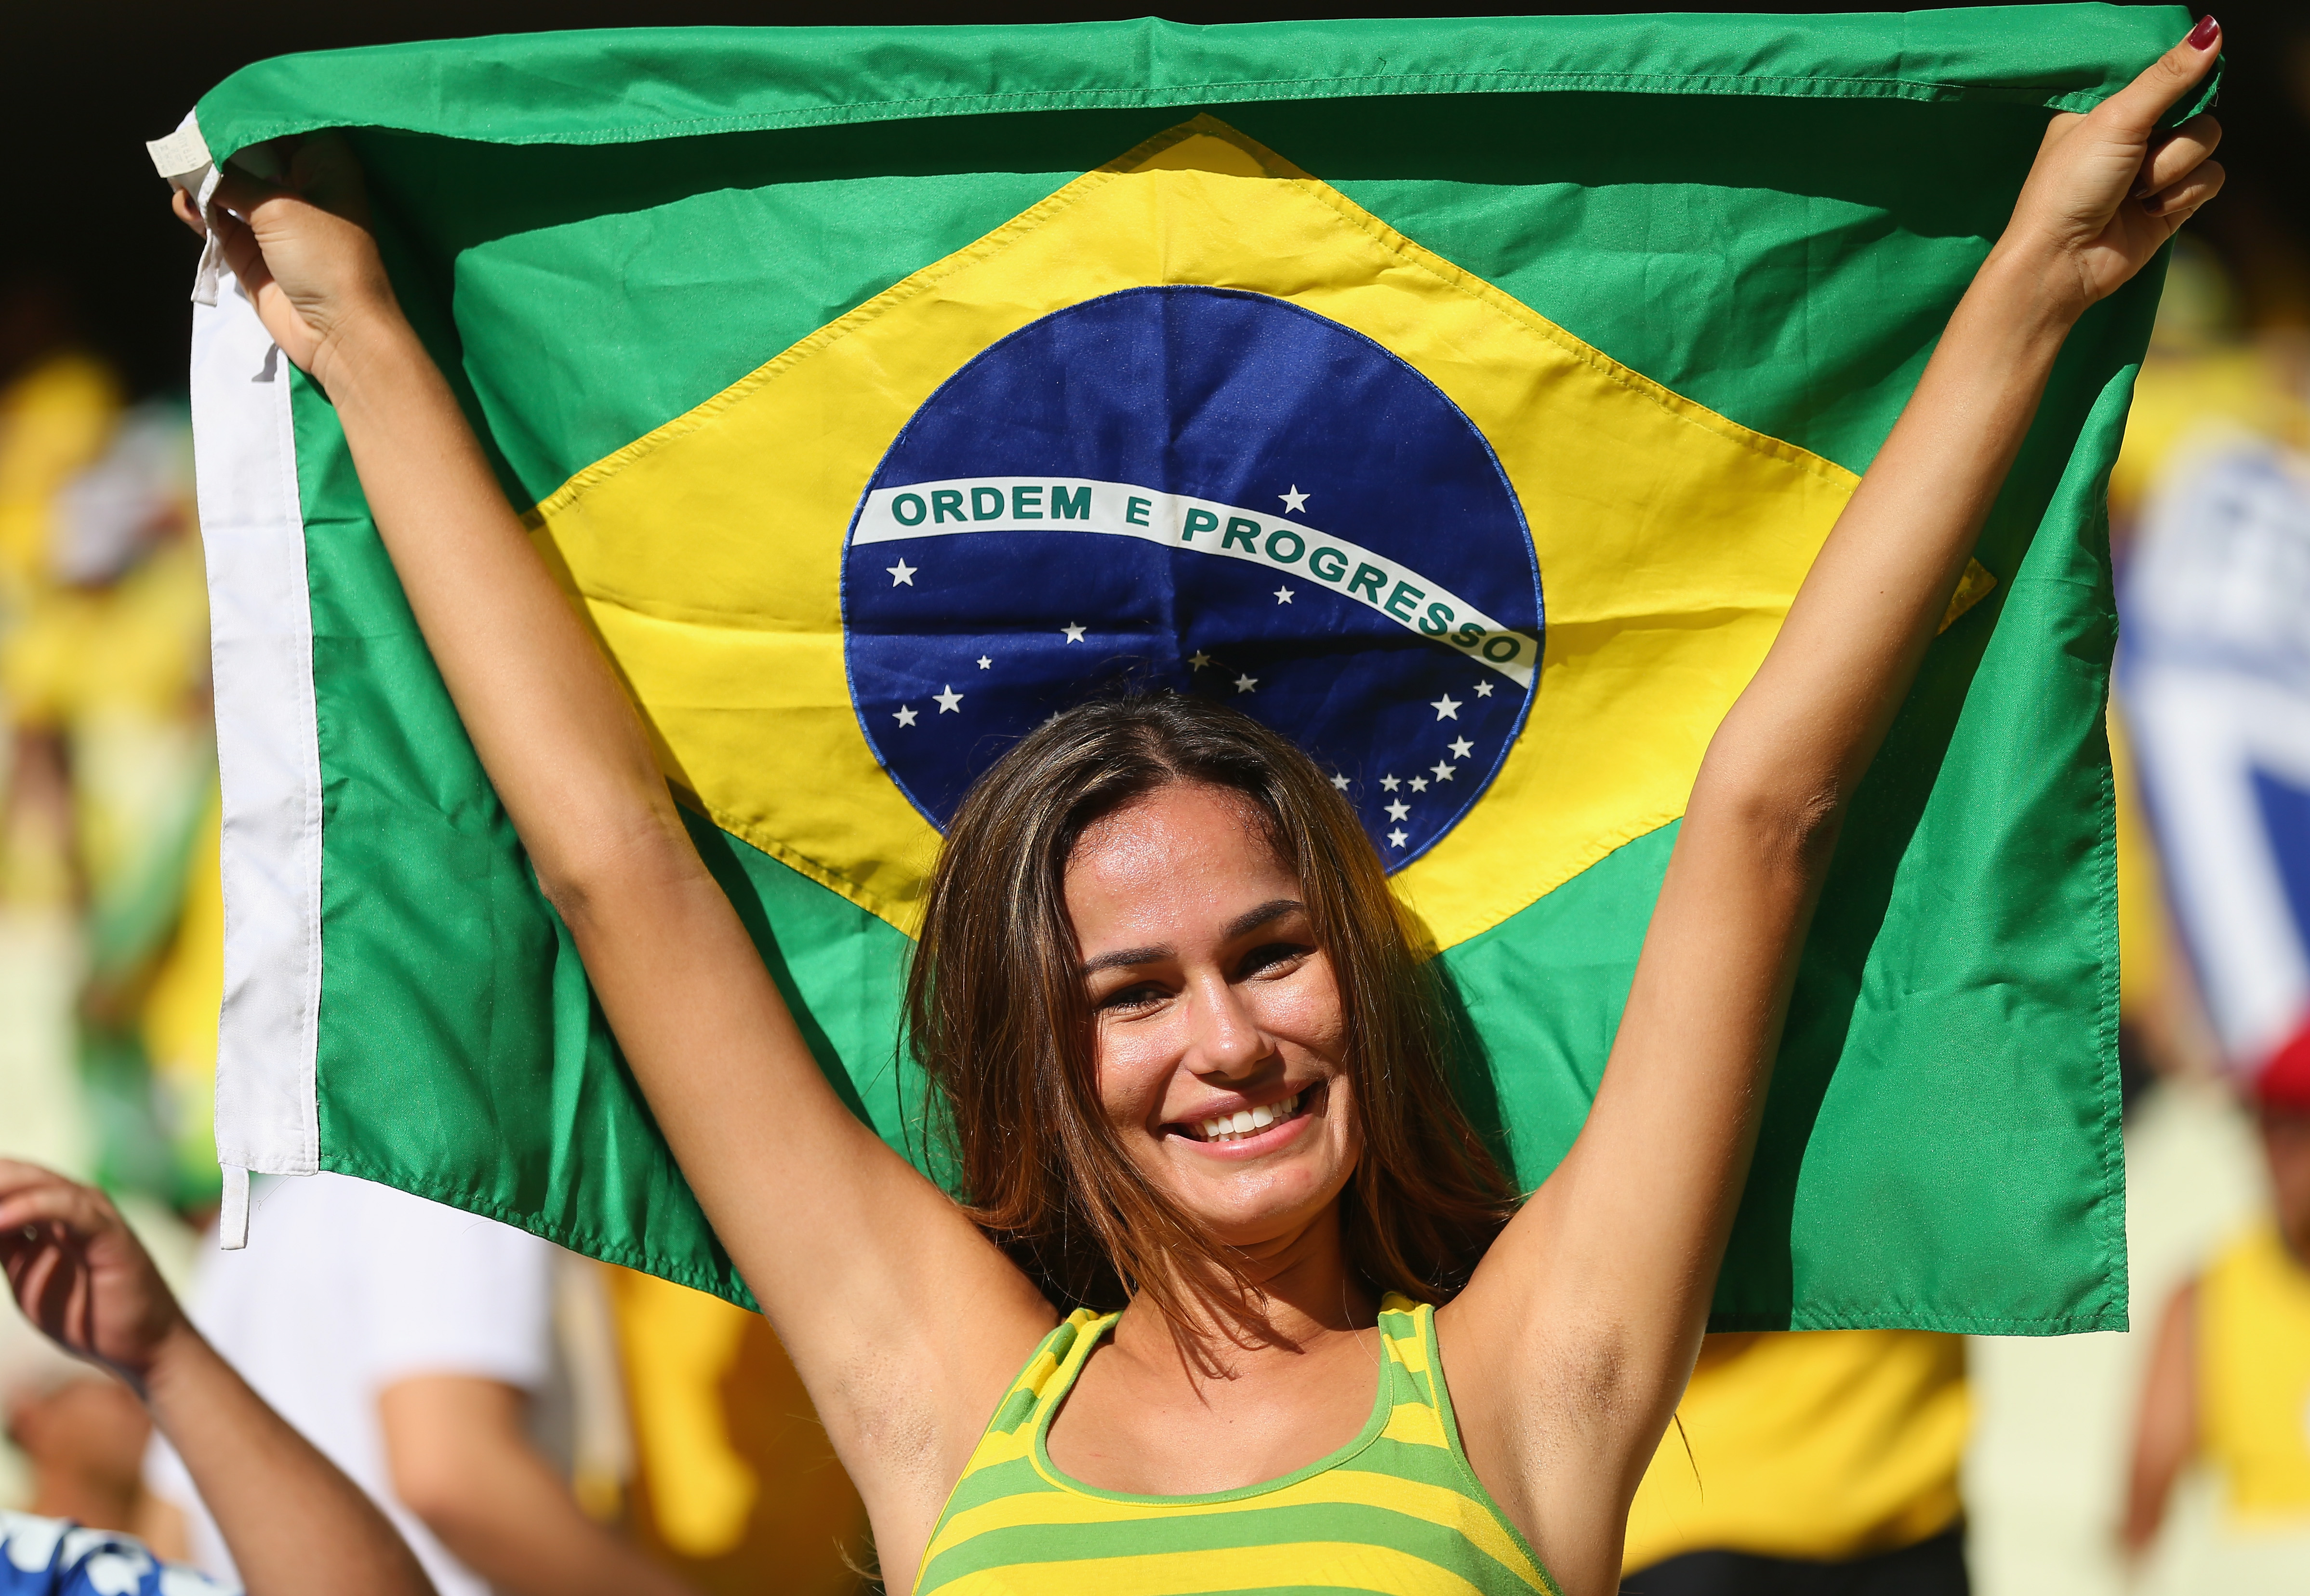 Красивые женщины бразилии